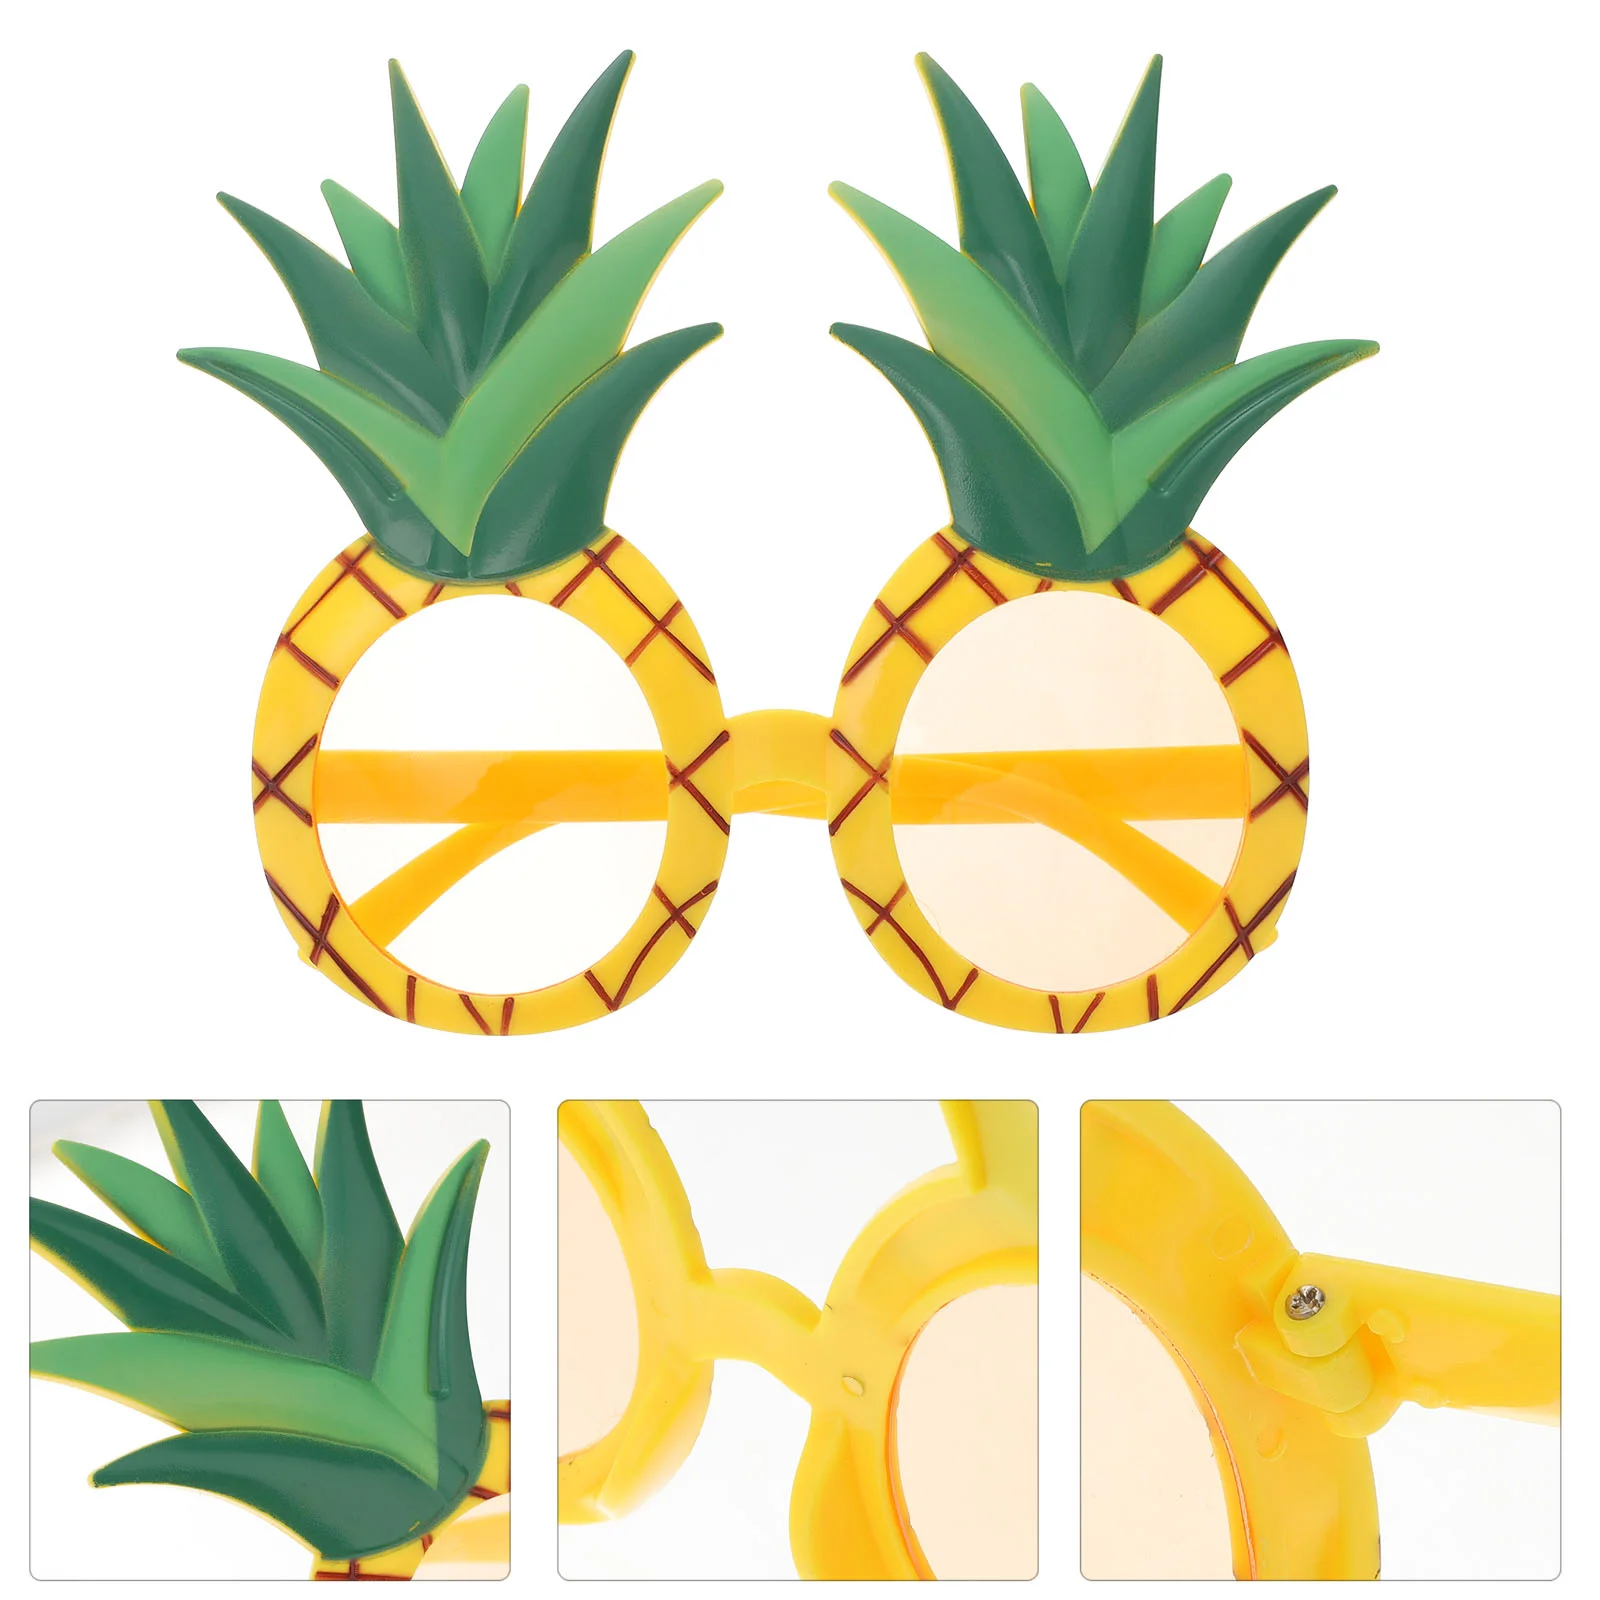 

Аксессуары для очков в виде ананаса, забавные Гавайские солнцезащитные очки, забавные очки в гавайском стиле